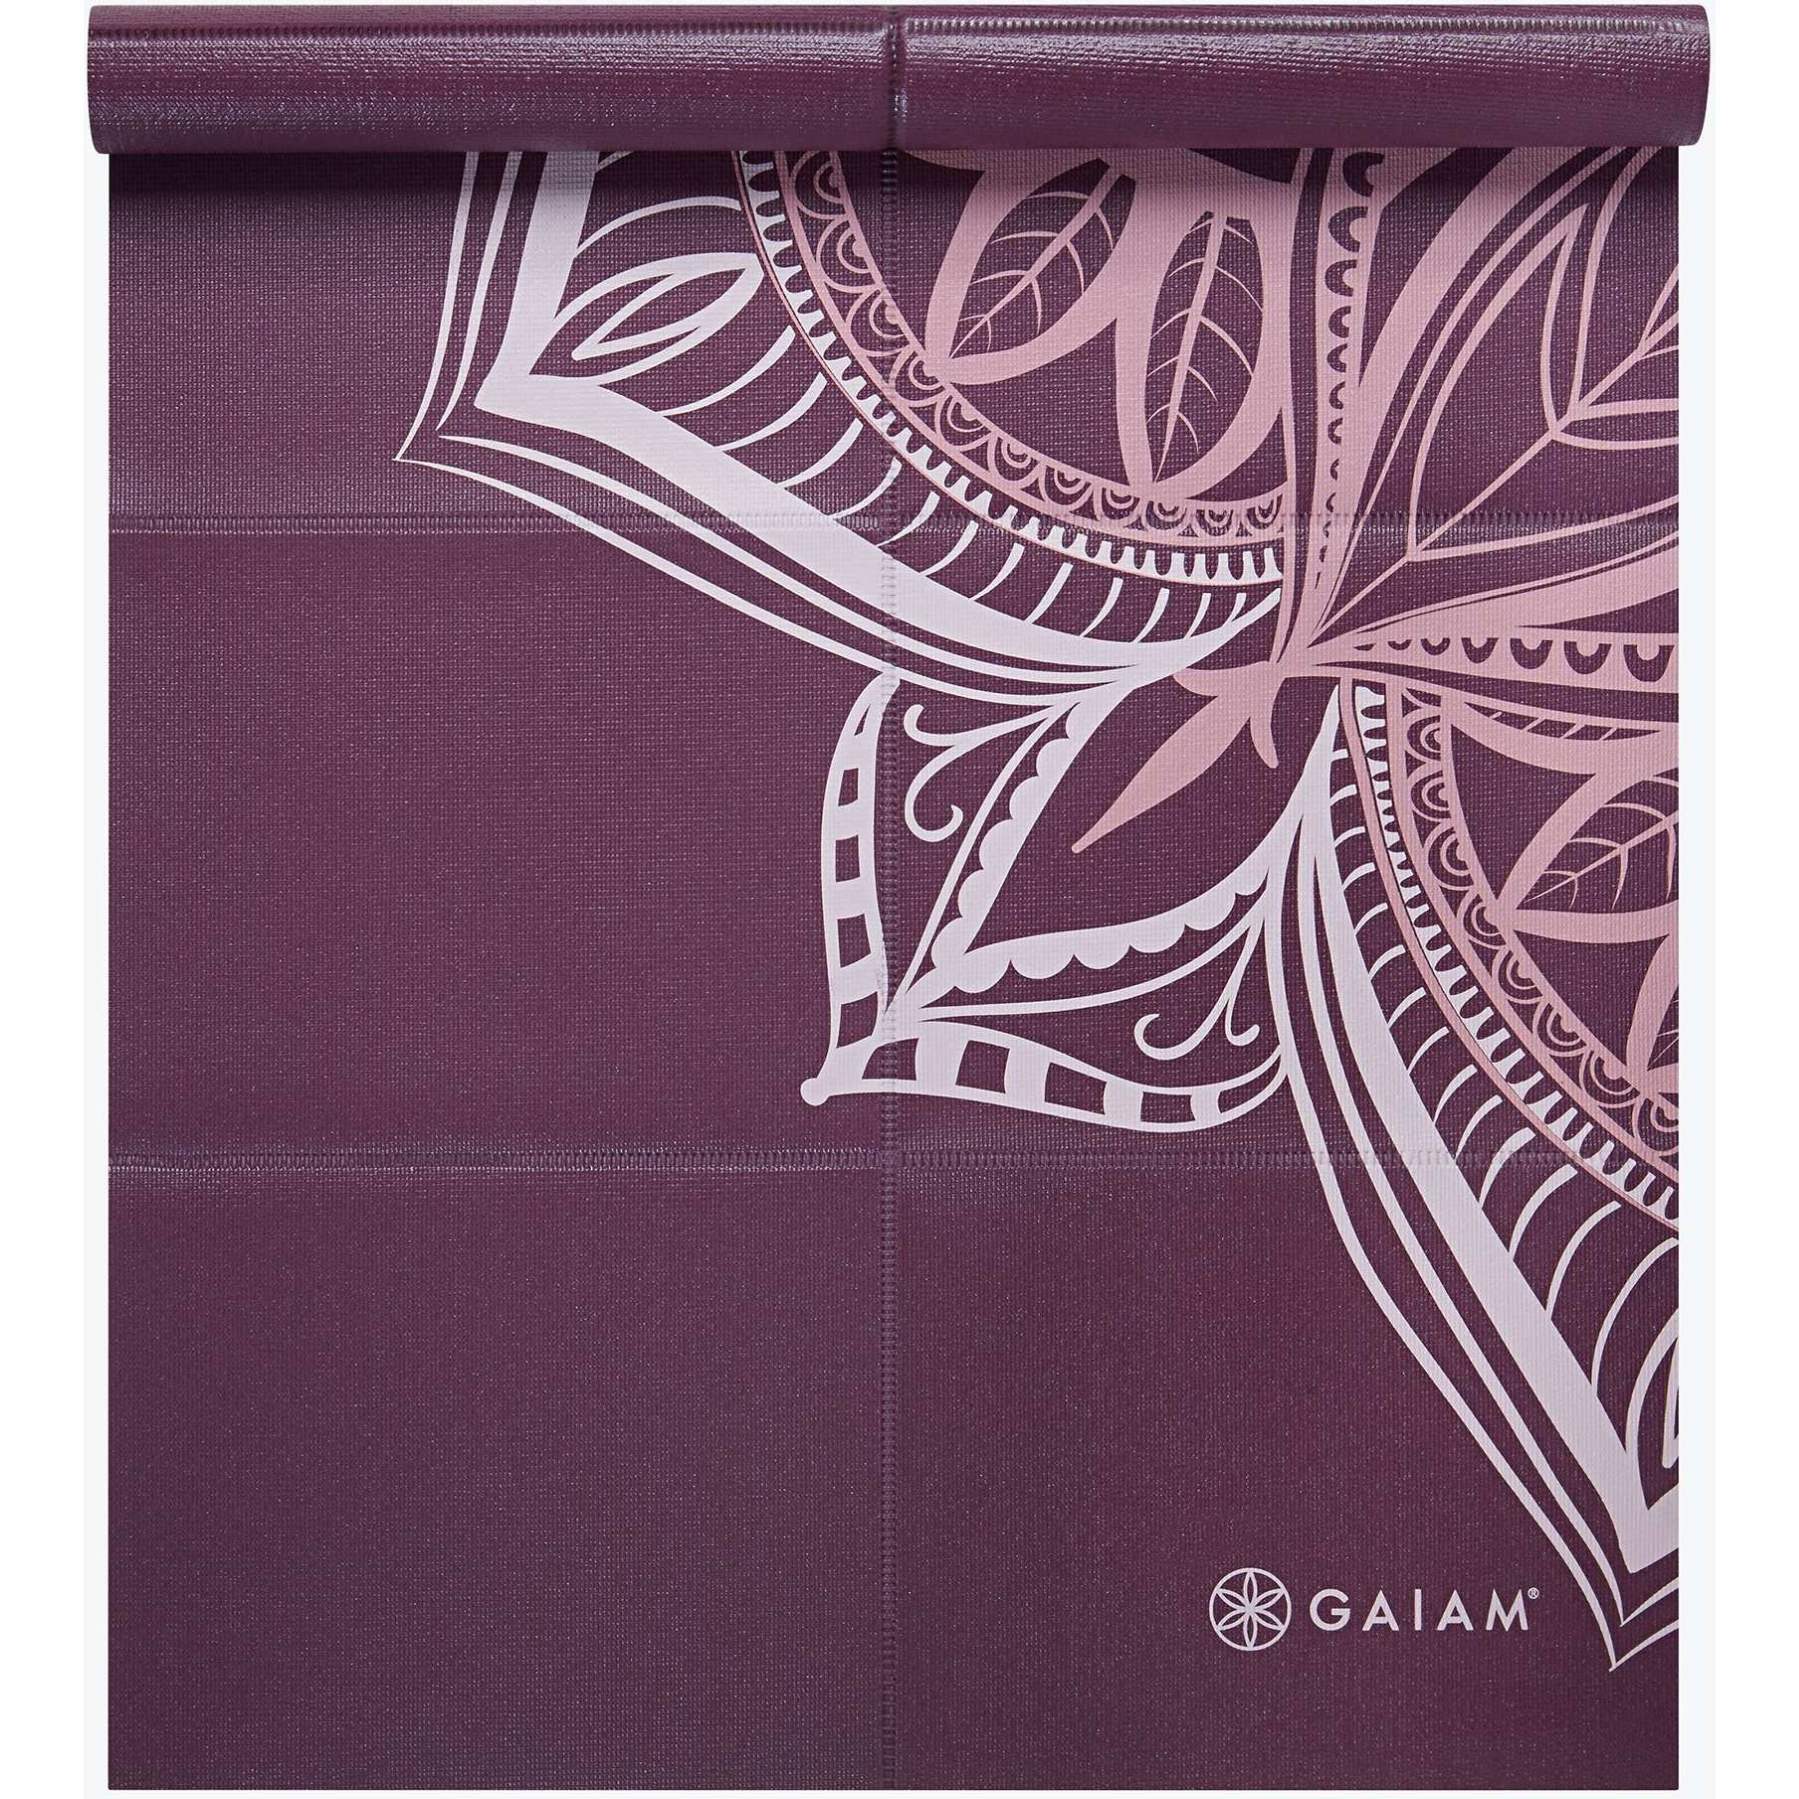 Gaiam Foldable Yoga Mat (2mm) - Cranberry